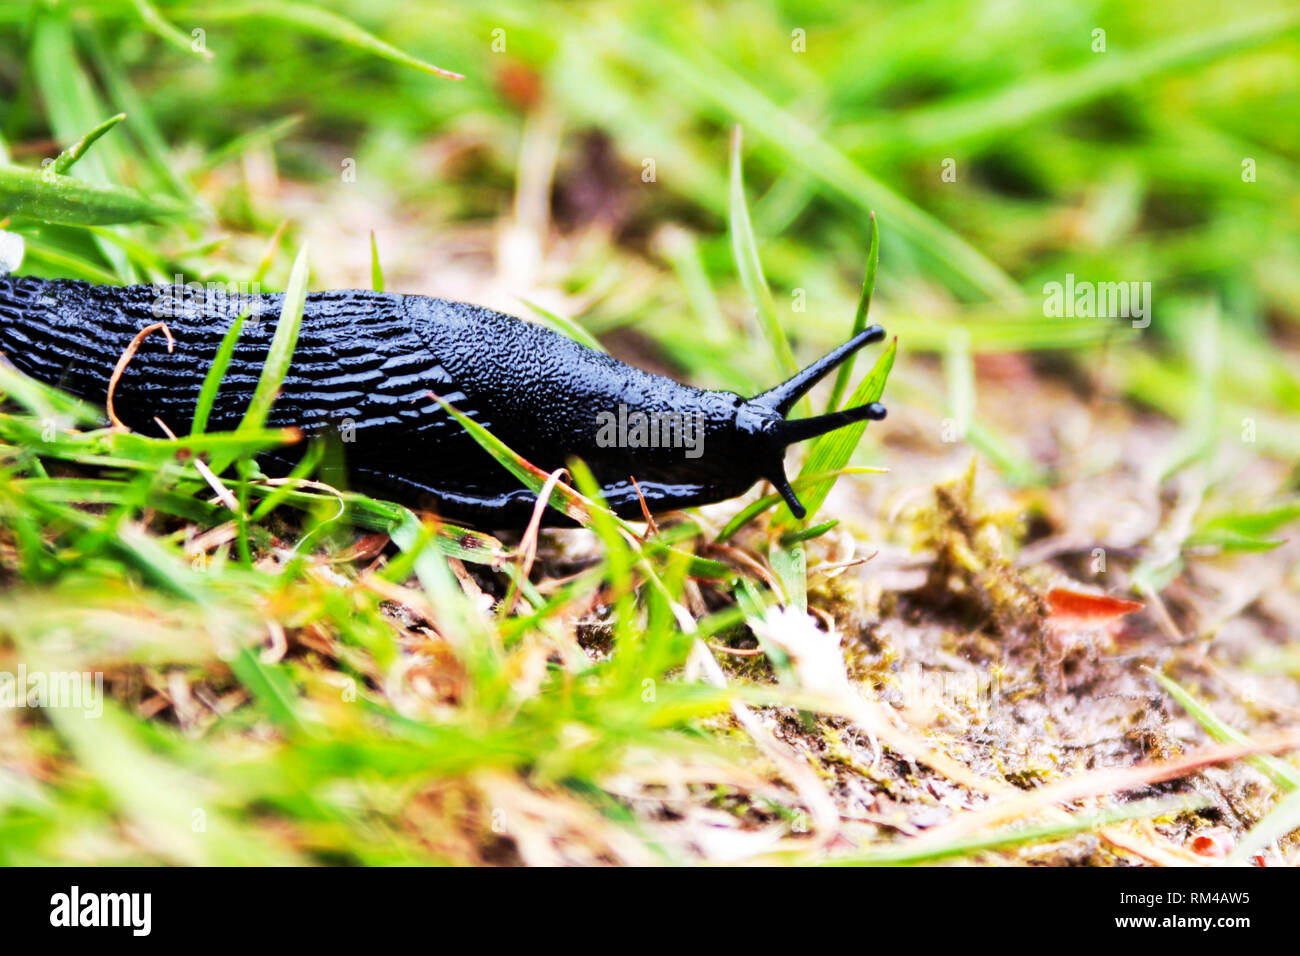 Slug in the grass Stock Photo